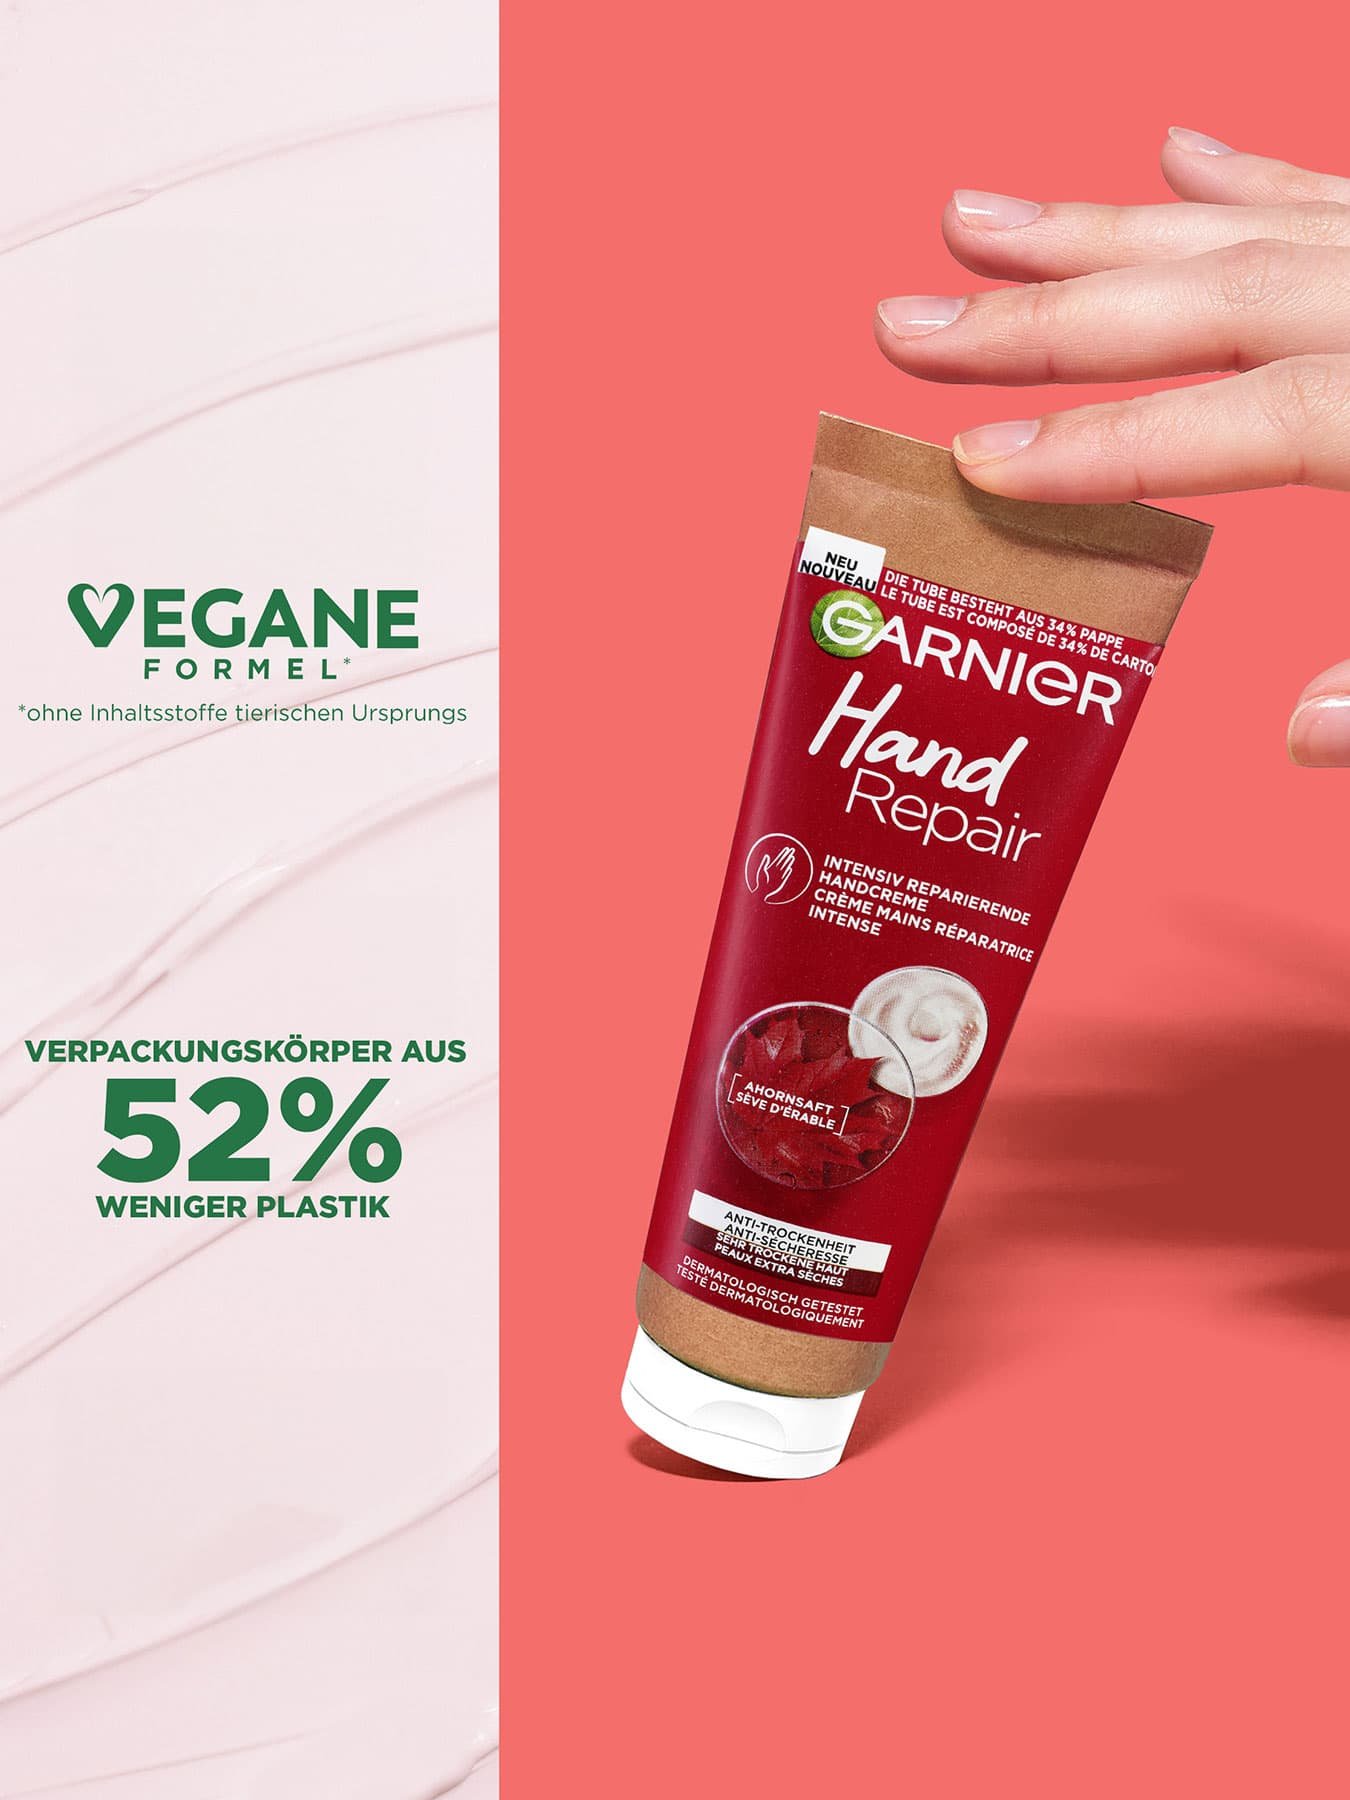 Produkt stehend wird von einer weiblichen Hand leicht gekippt  / Produktvorteile  - vegane Formel & 52% weniger Plastik